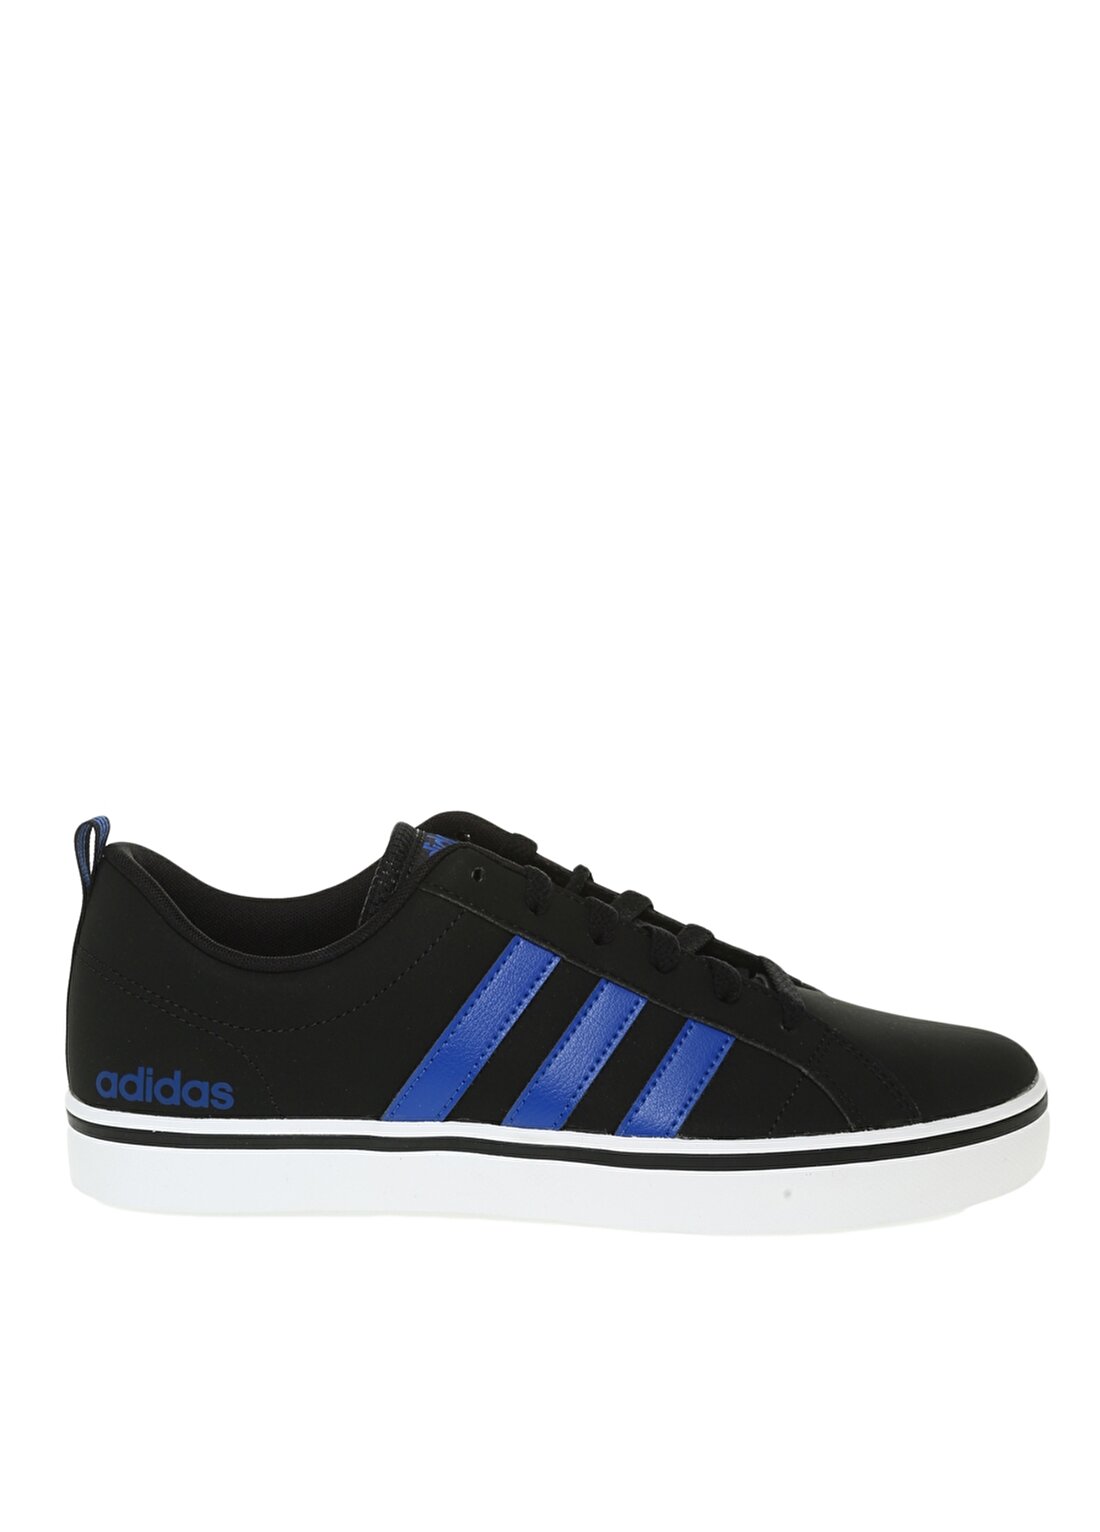 Adidas FY8579 Vs Pace Siyah - Beyaz - Mavi Erkek Lifestyle Ayakkabı